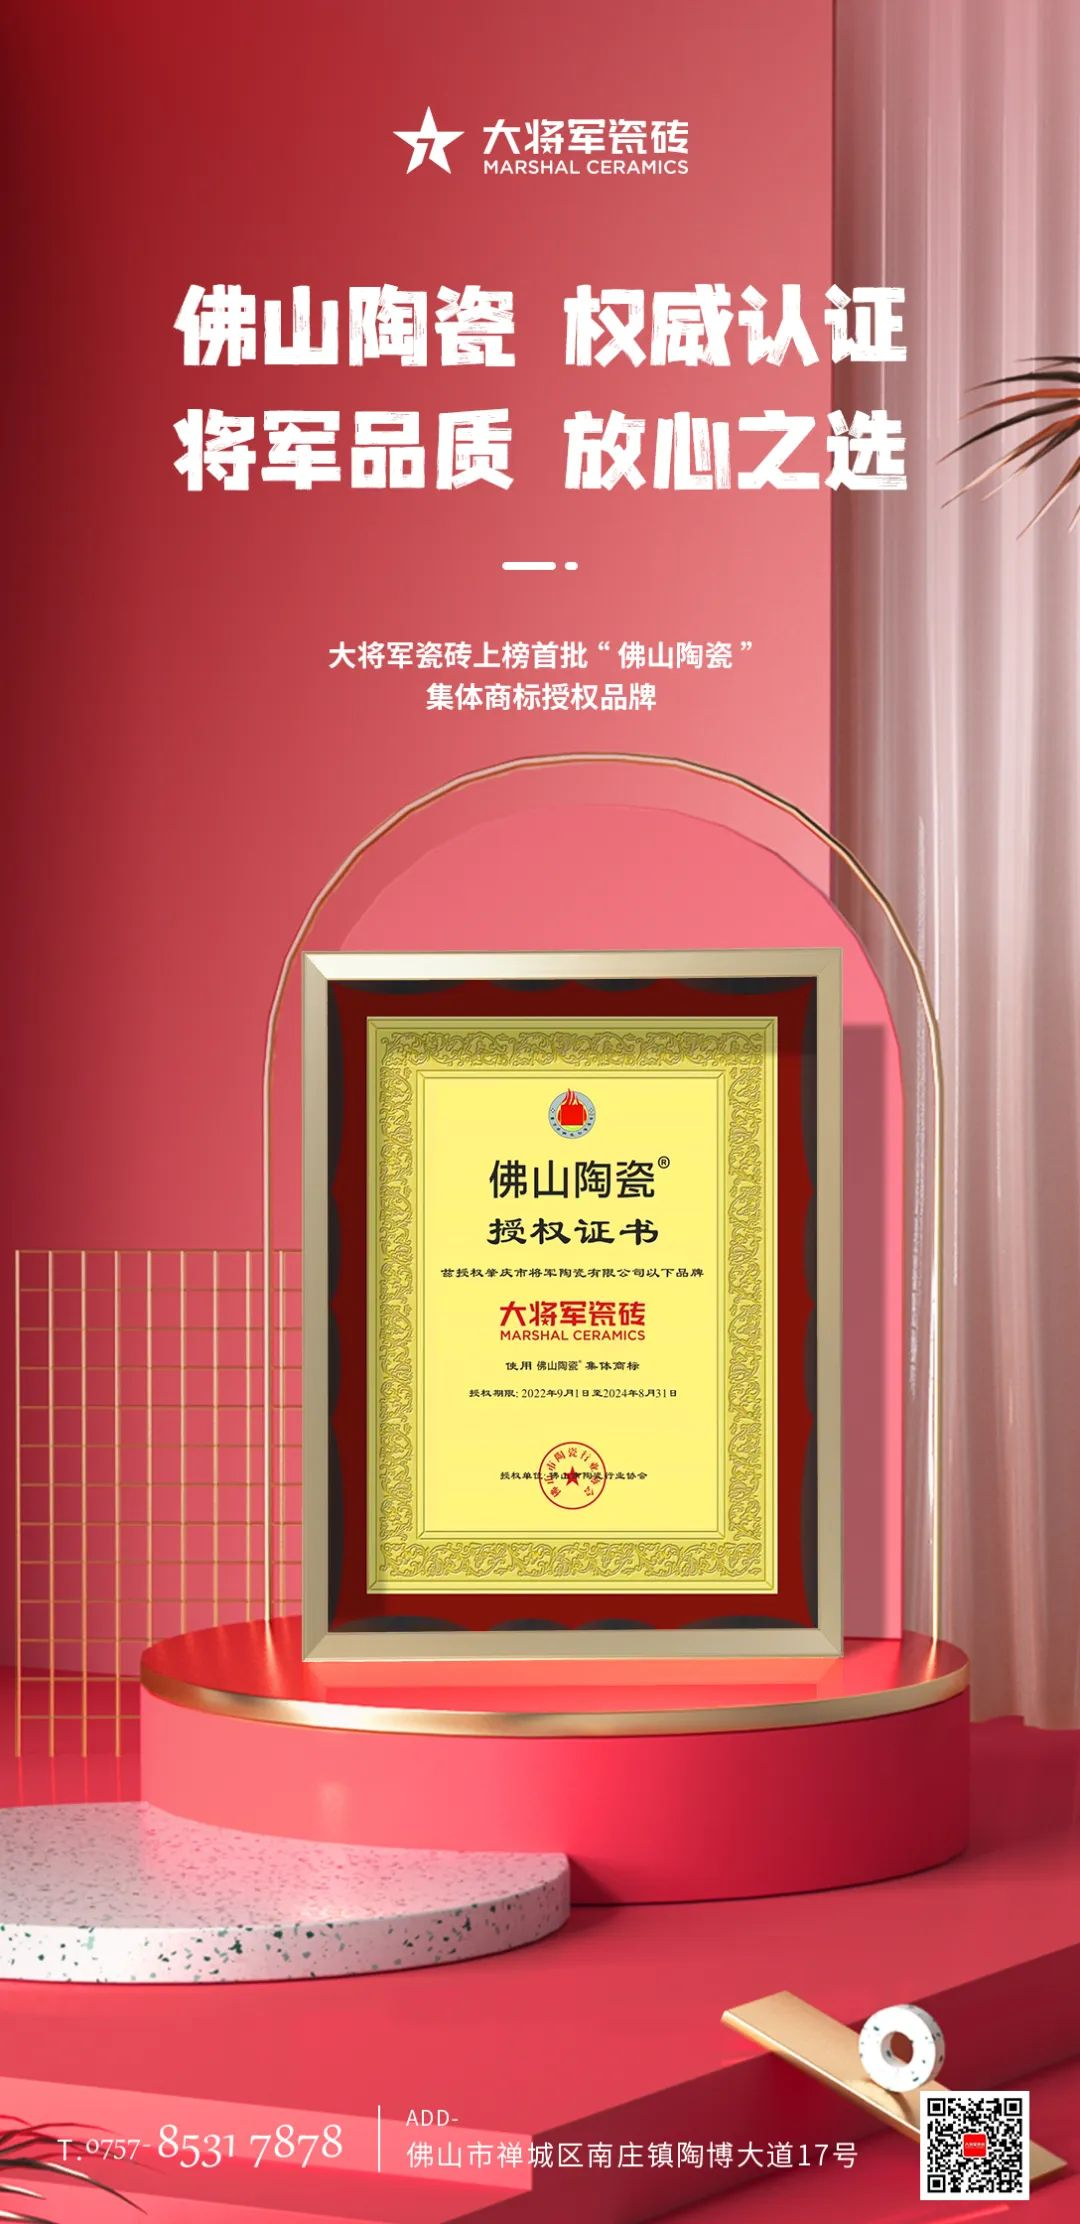 权威认证，品质保障 | 大米乐m6
米乐m6
上榜首批“佛山陶瓷”集体商标授权品牌(图3)